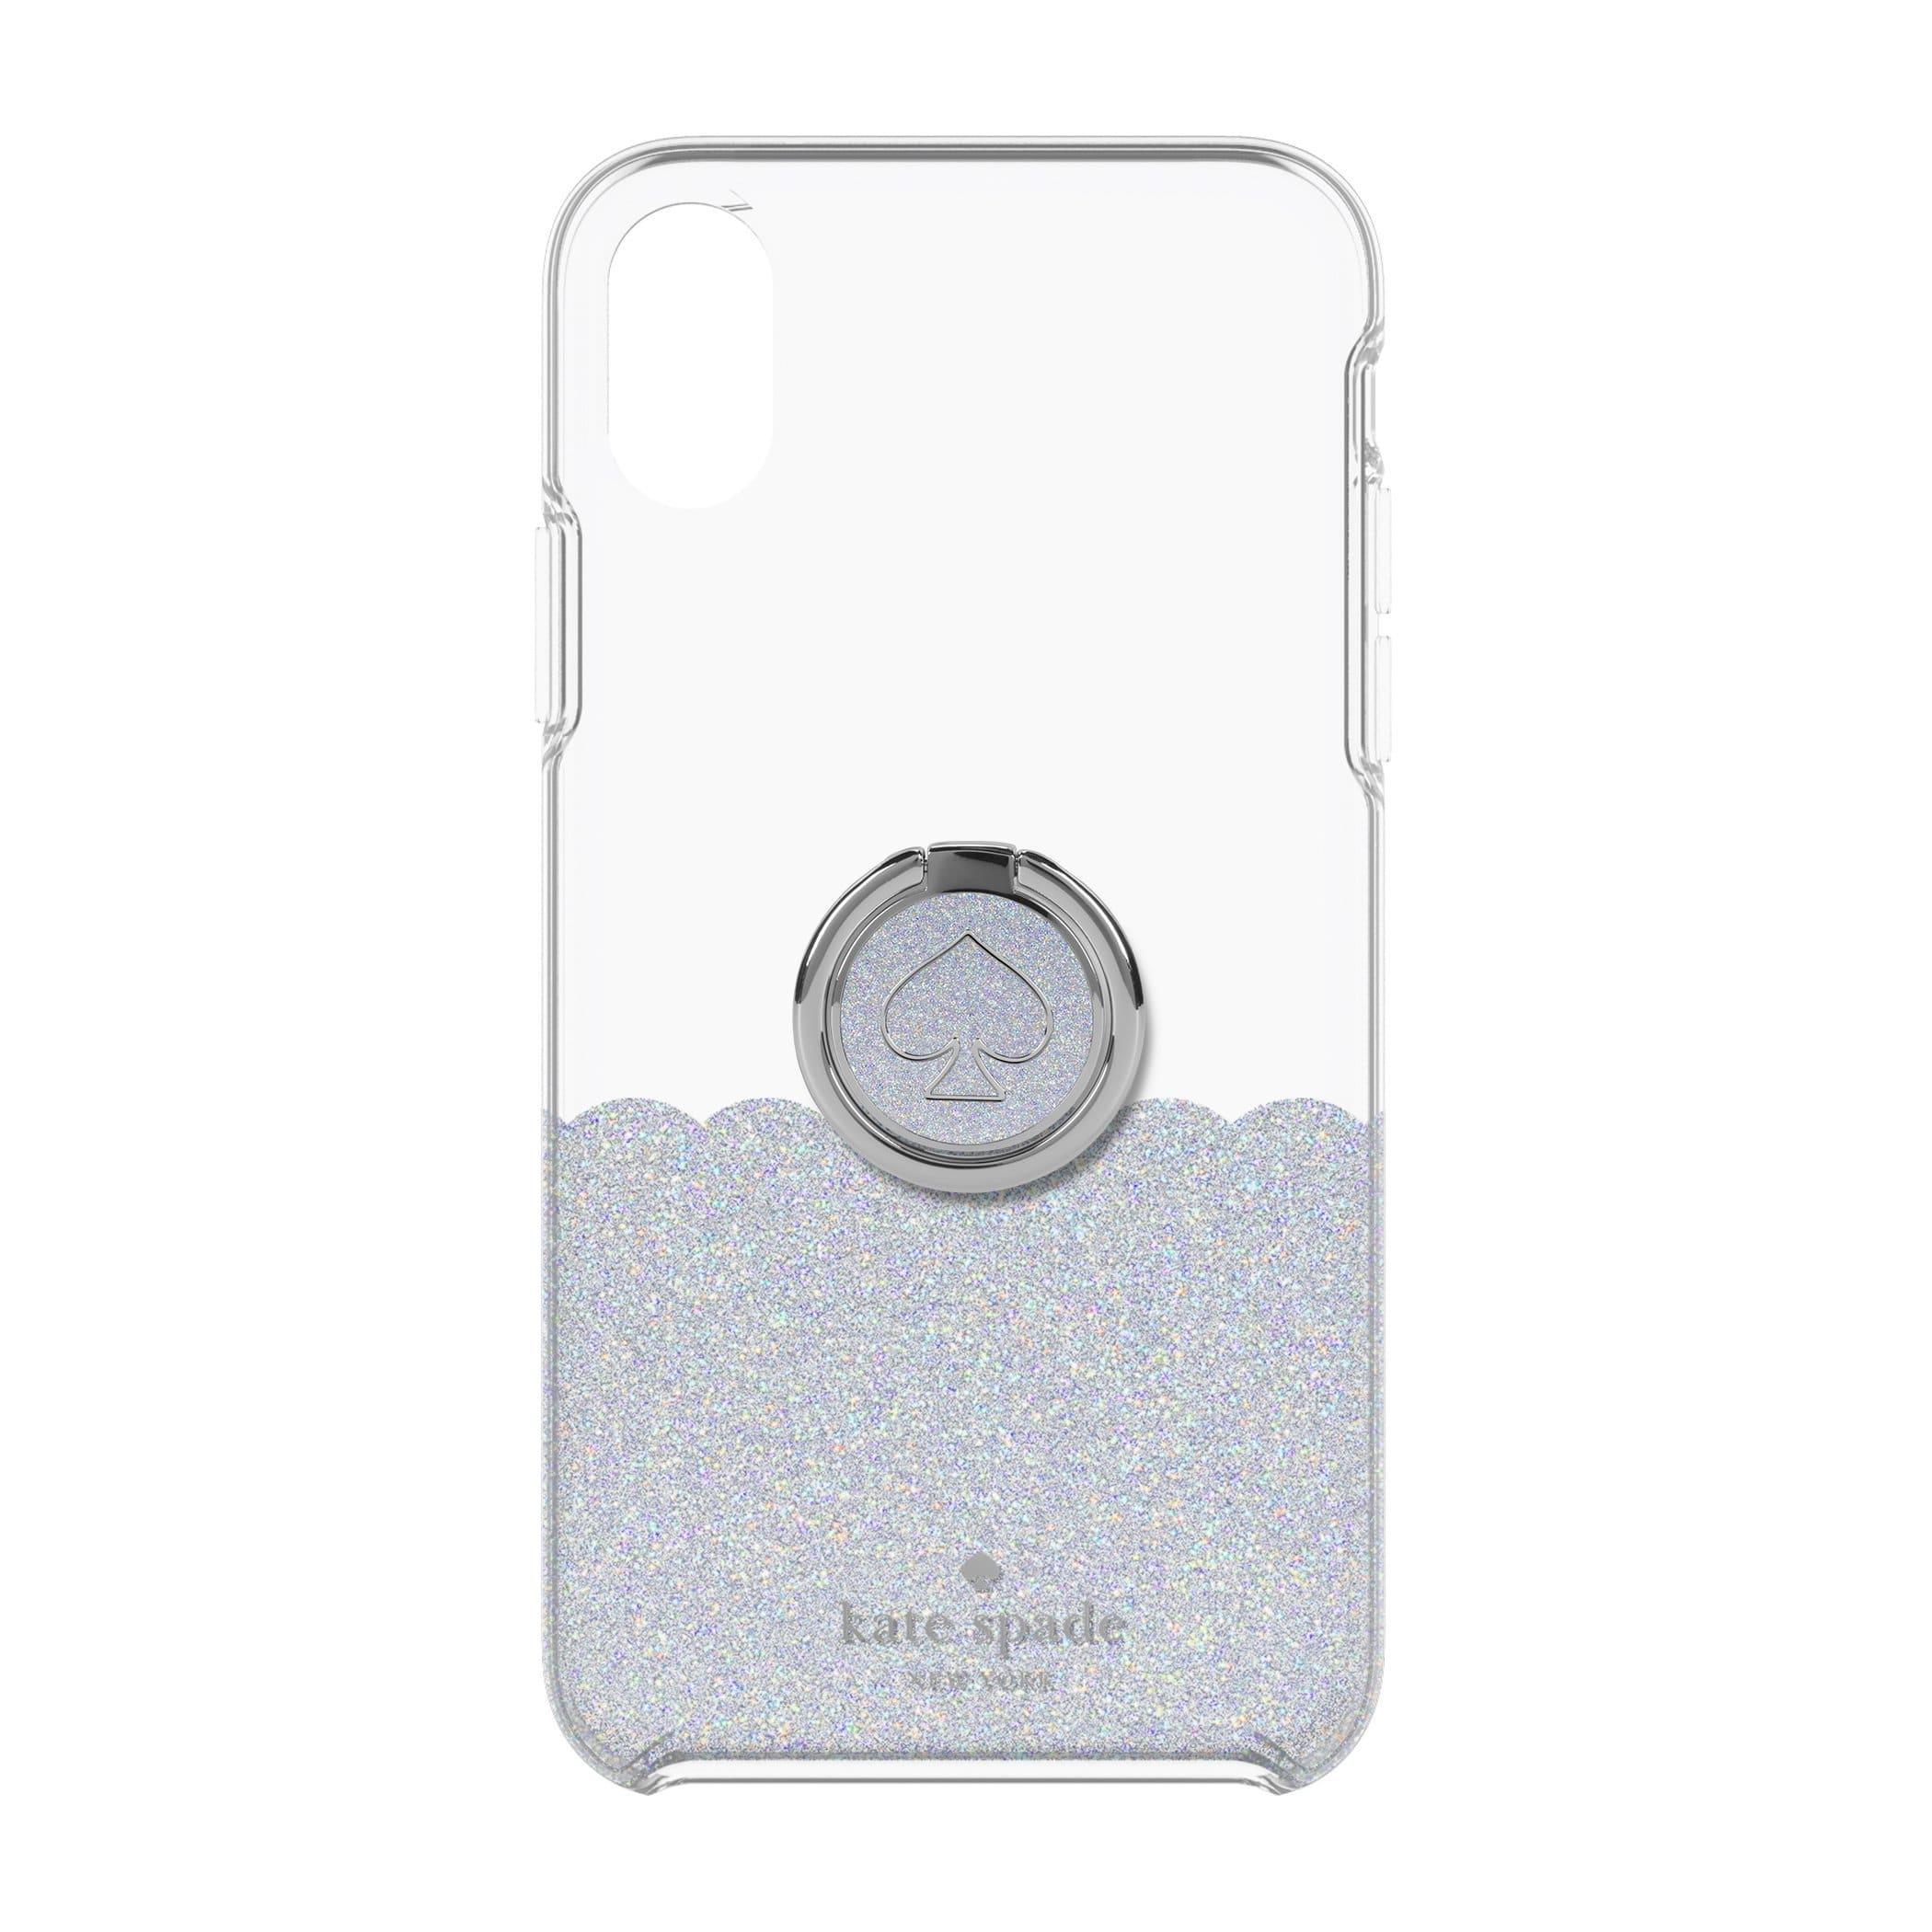 كفر حماية آيفون KATE SPADE NEW YORK Gift Set: Ring Stand & Protective Hardshell Case - Scallop Mermaid Glitter / Clear for iPhone XS Max